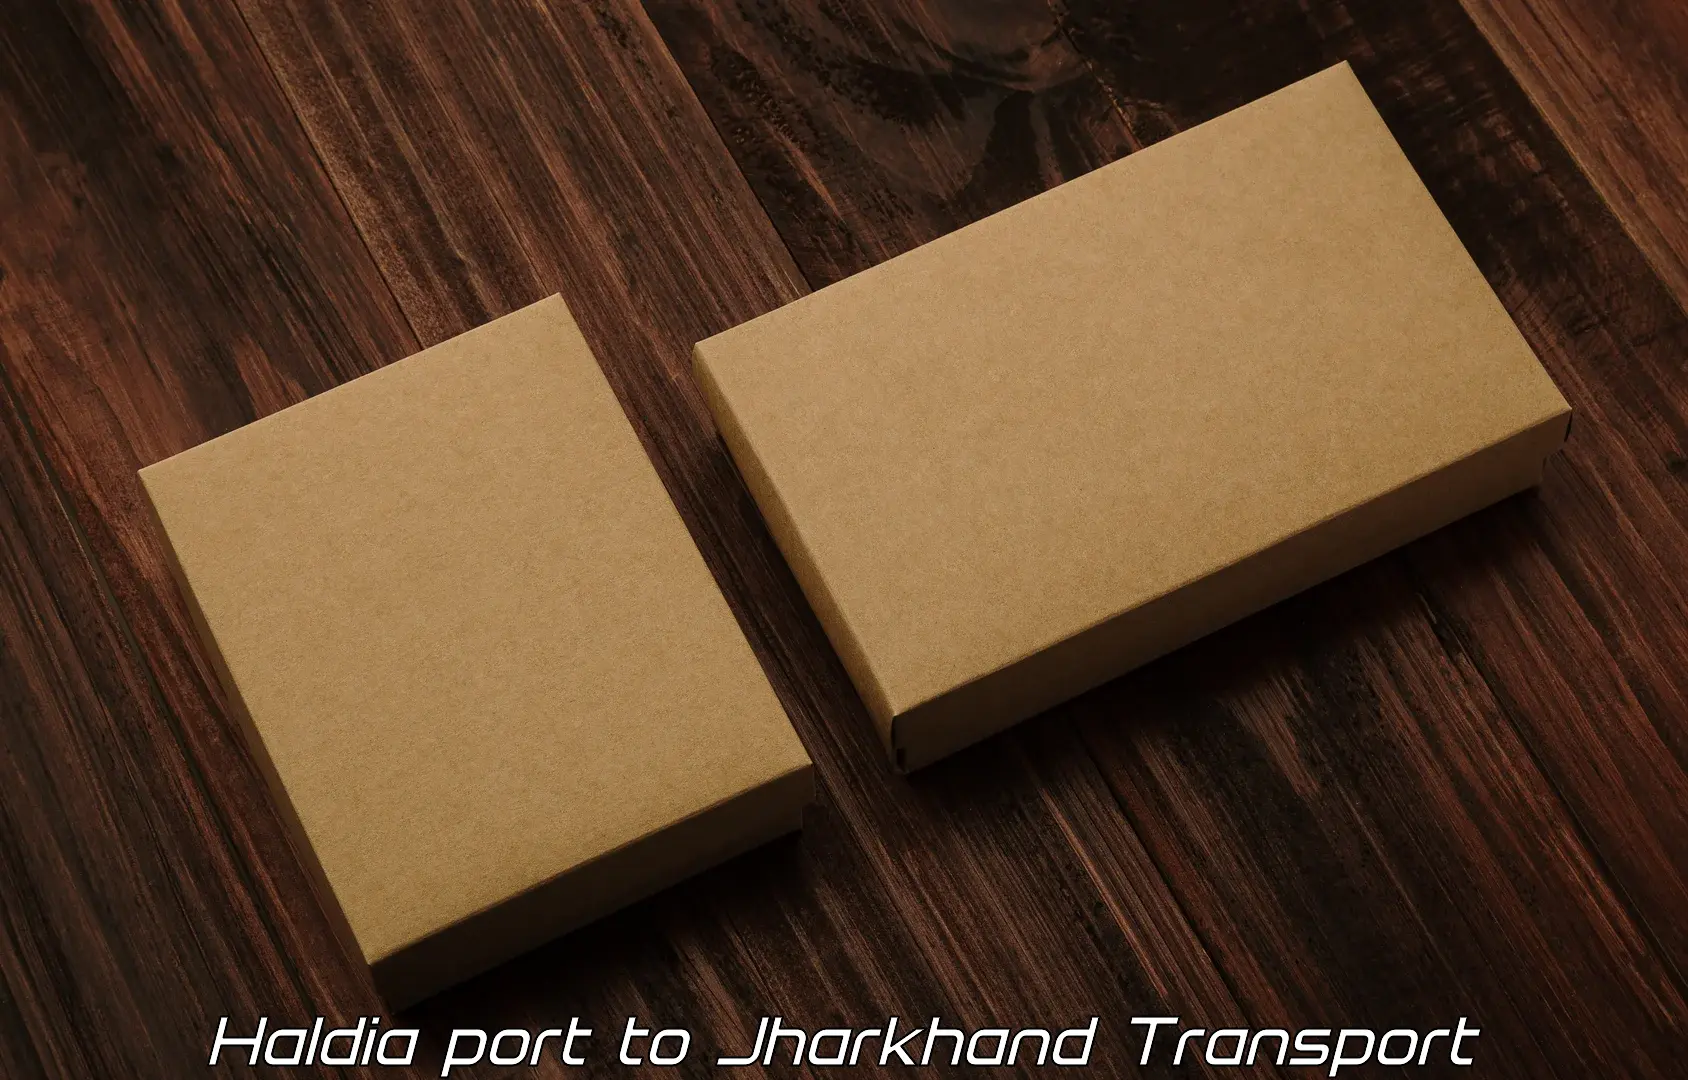 Truck transport companies in India Haldia port to Govindpur